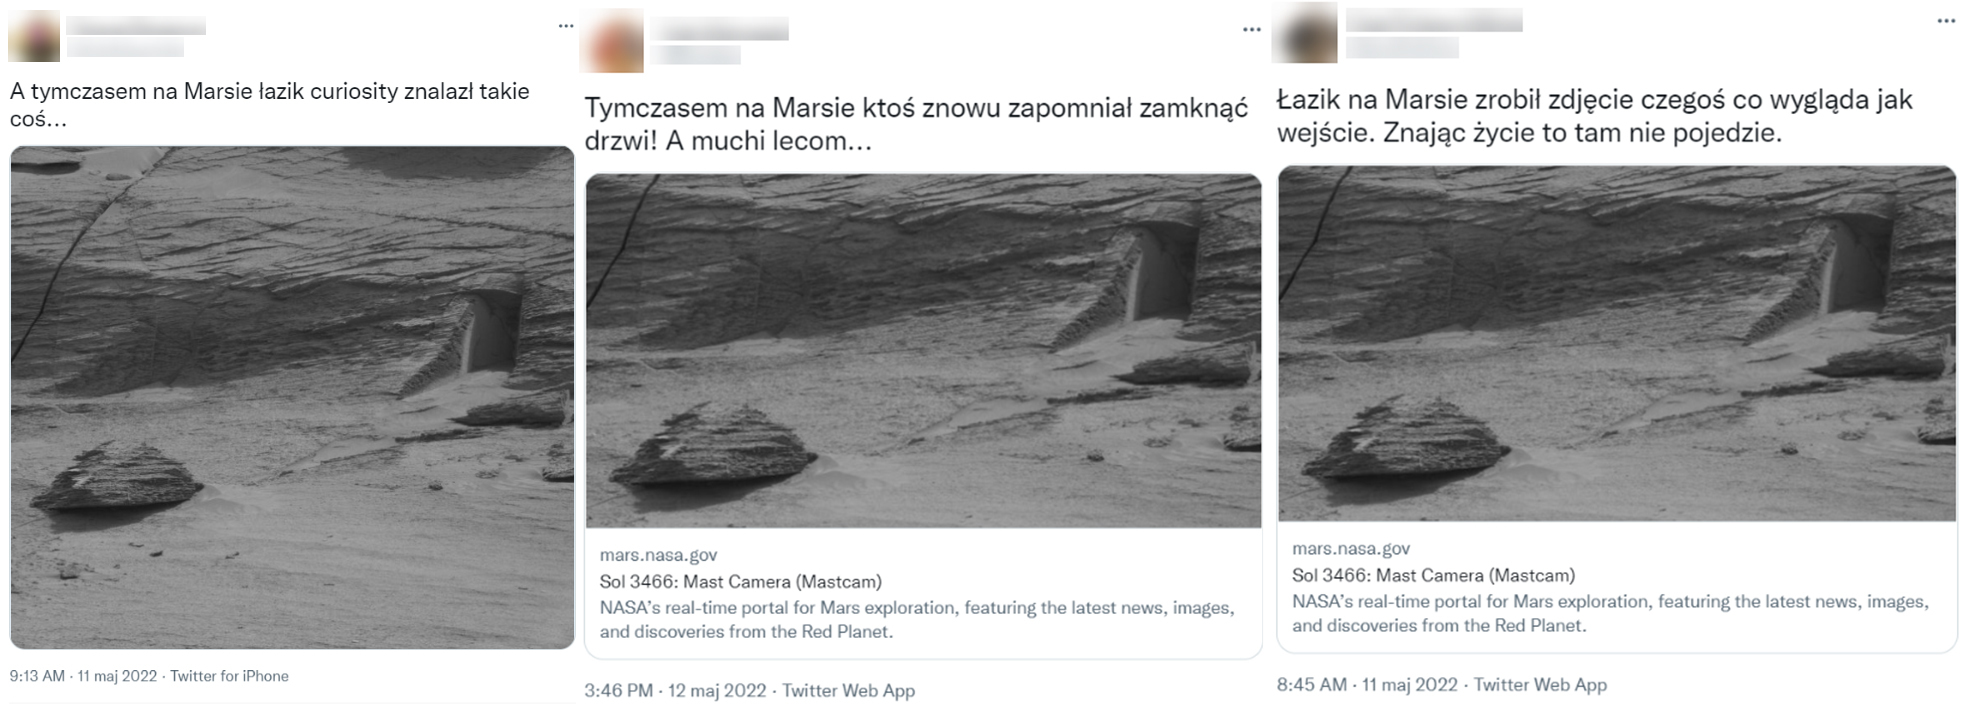 Tweety na temat zdjęcia z Marsa, w których przewija się motyw sfotografowanych drzwi 